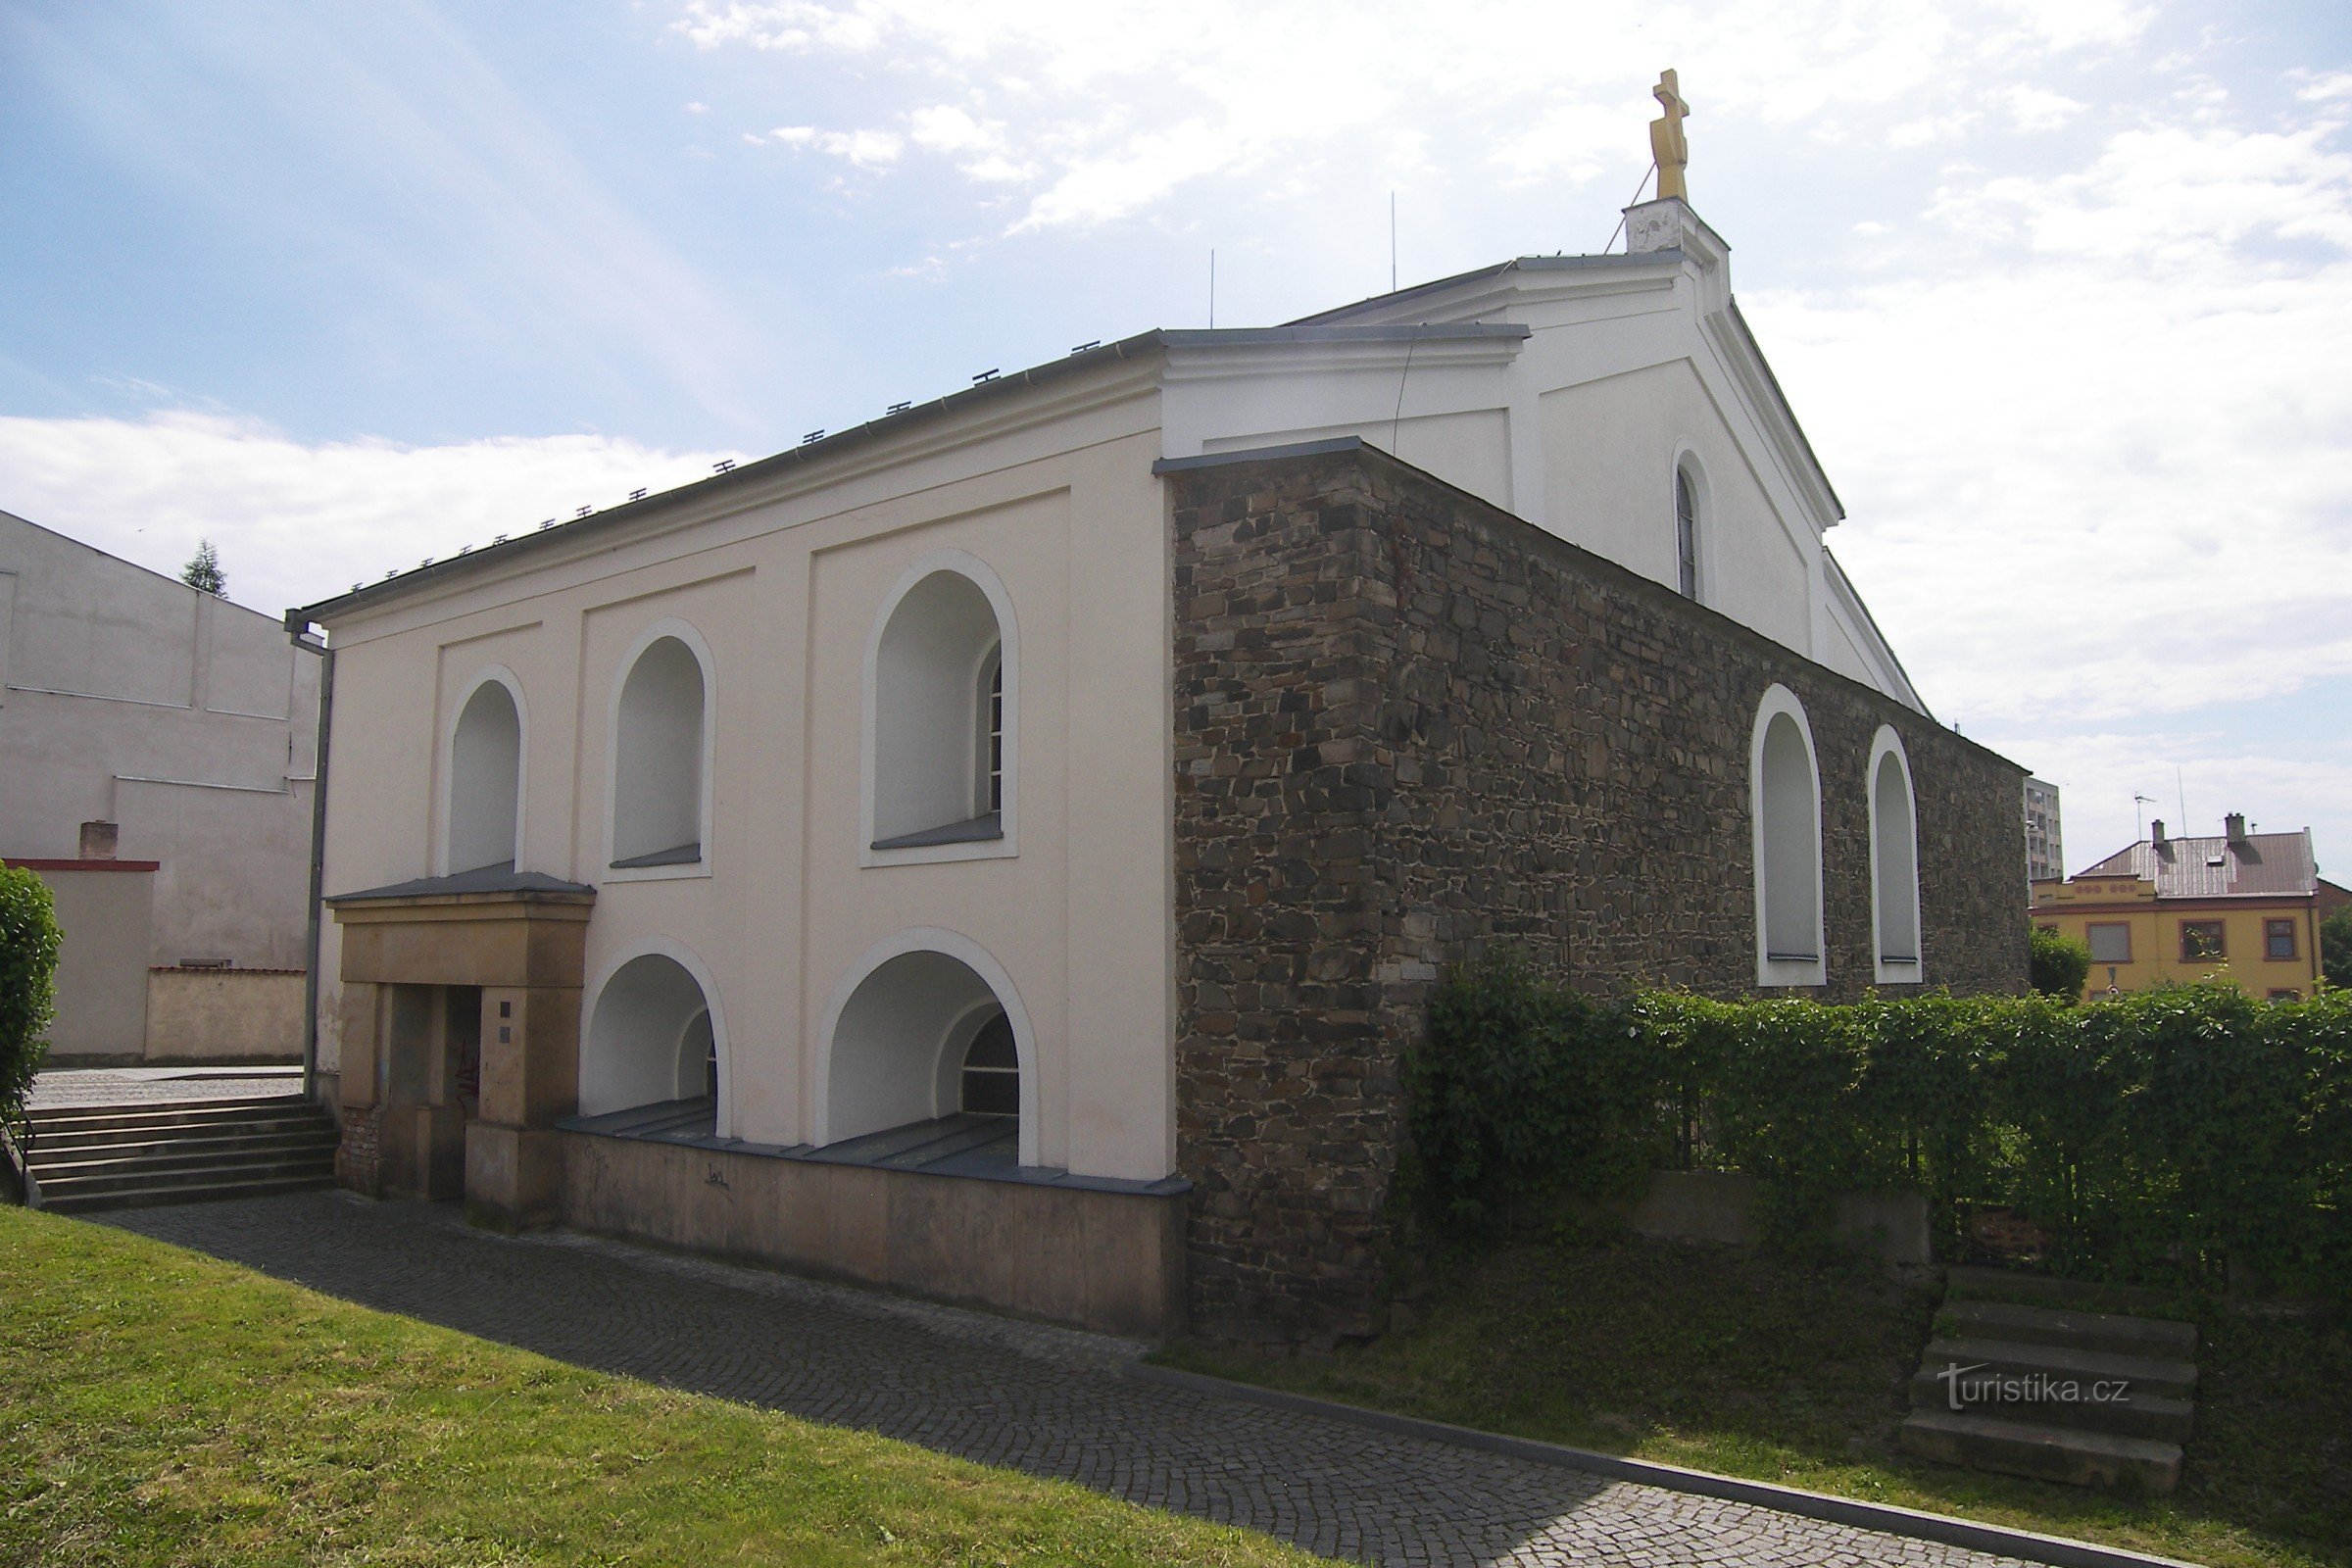 Lipnik nad Bečvou - judovska sinagoga